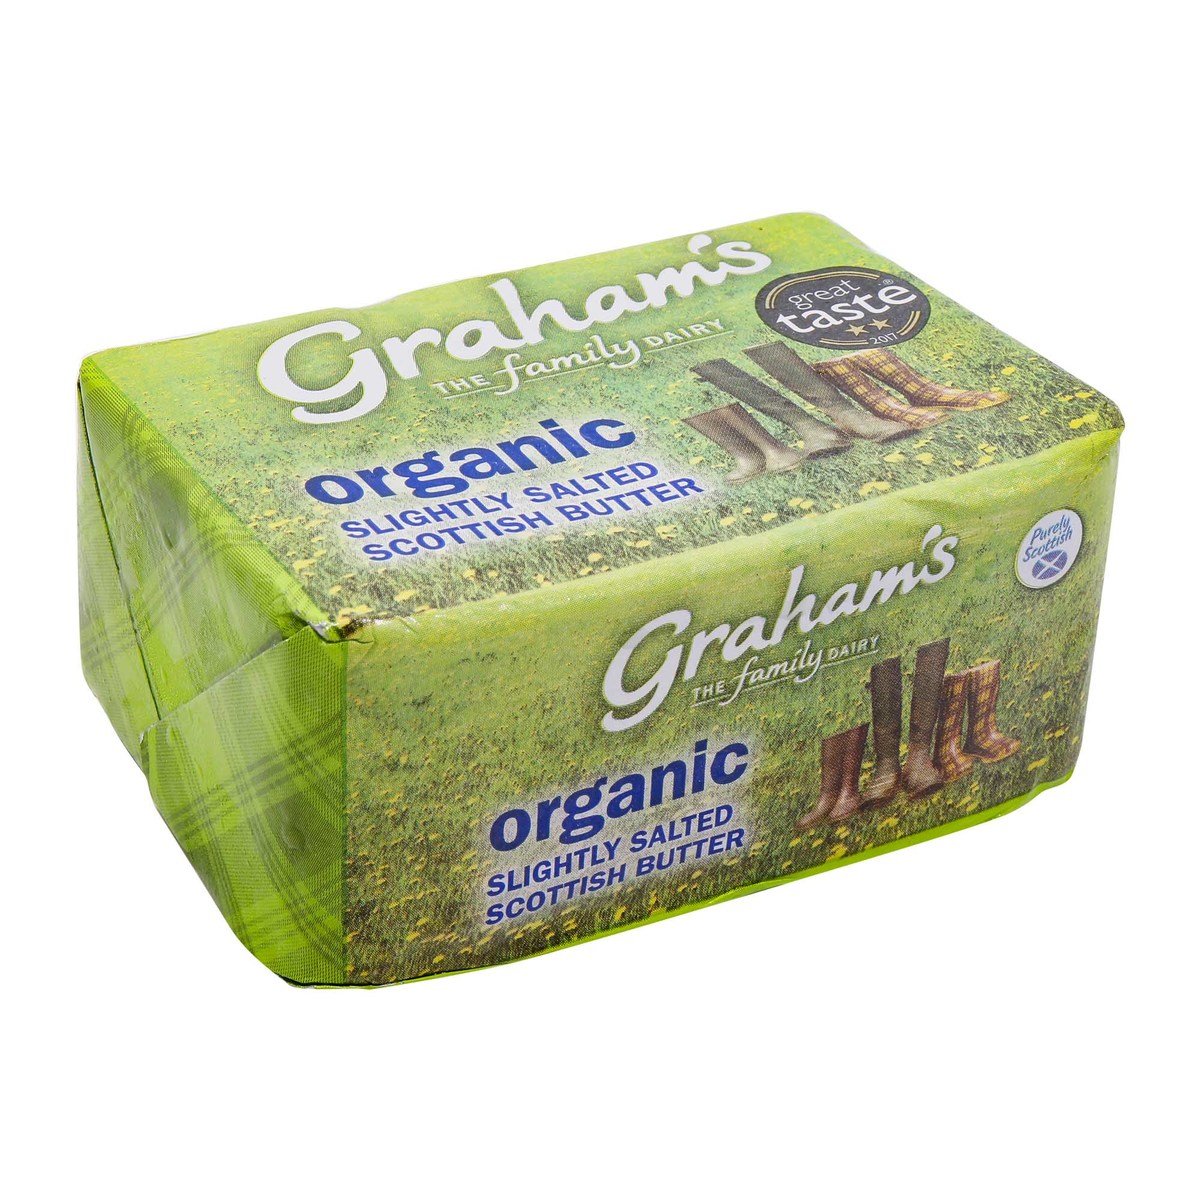 Graham's Organic Slightly Salted Scottish Butter 250g